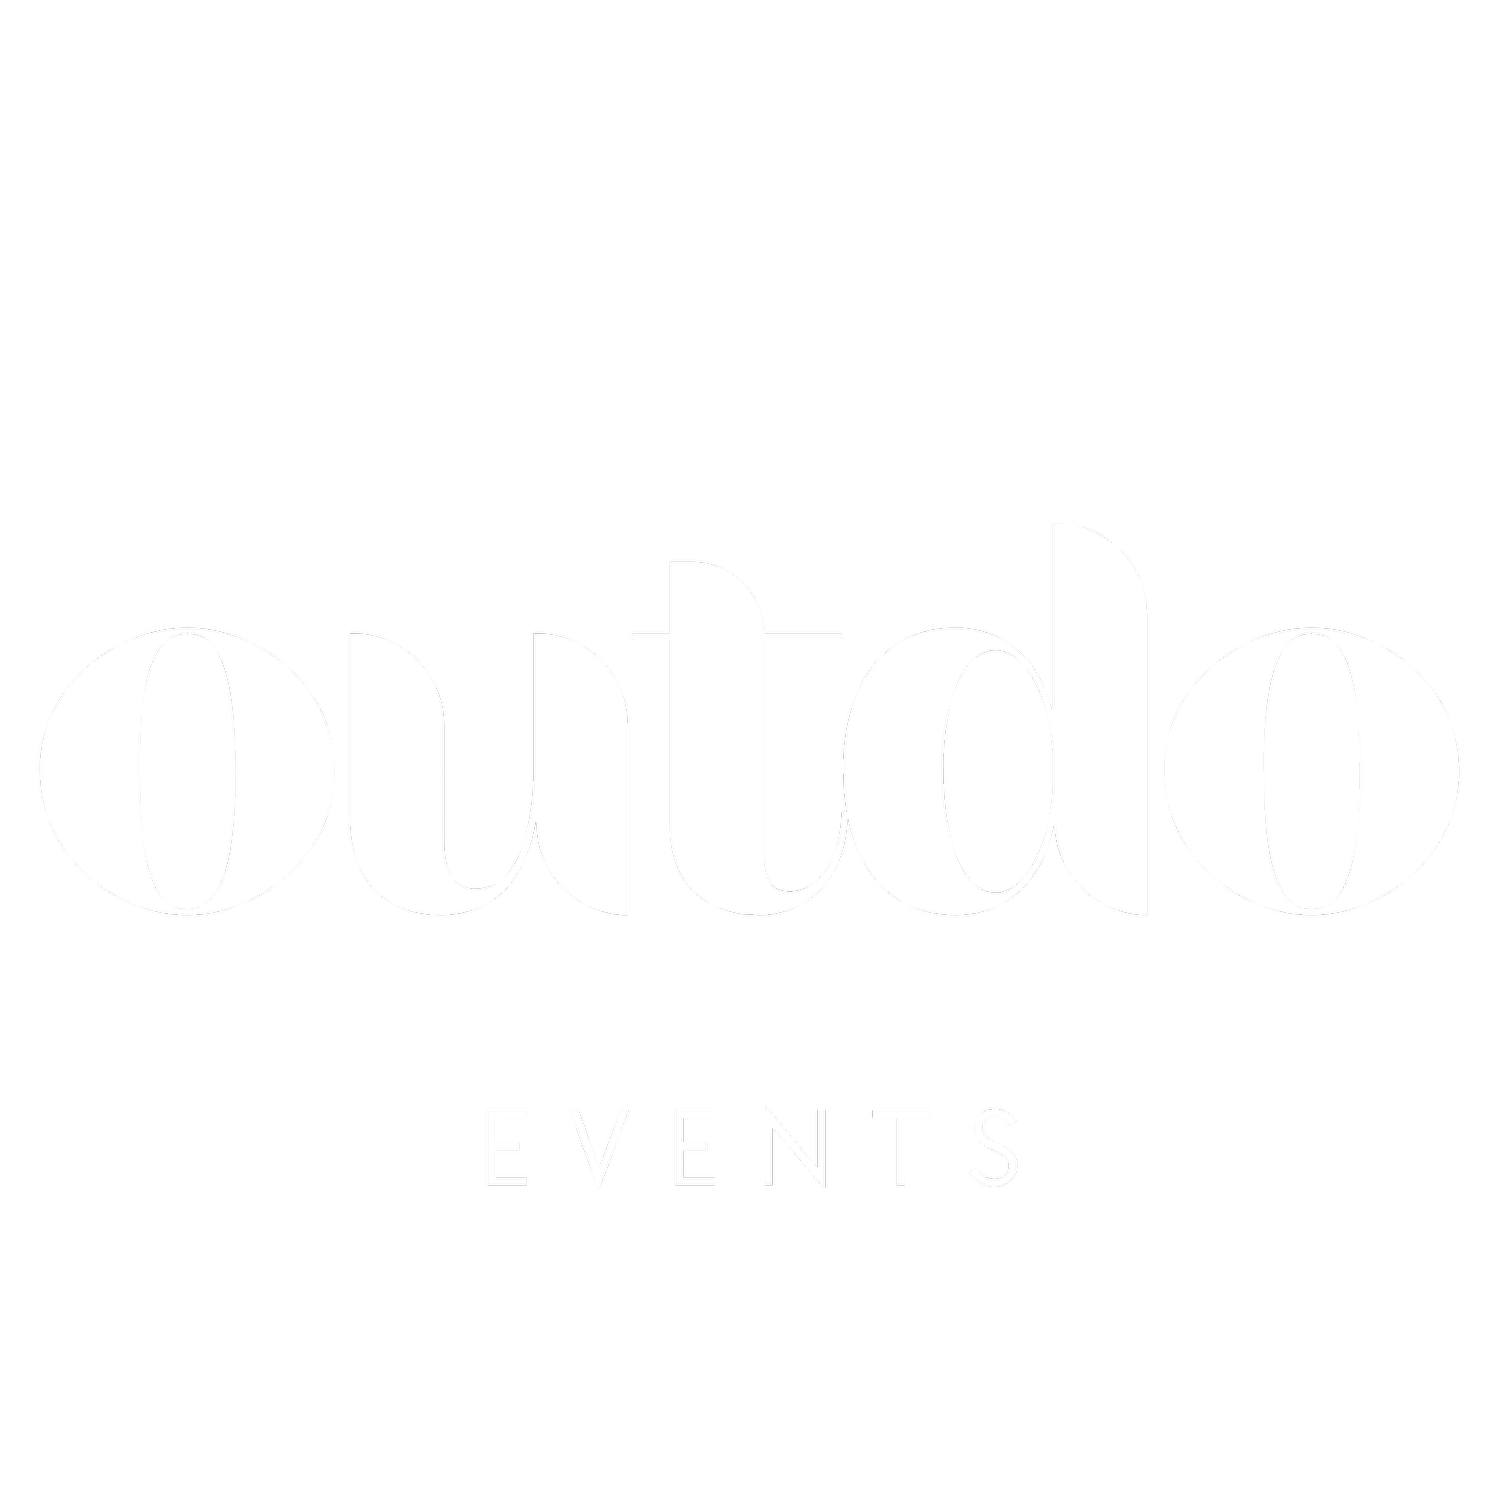 OUTDO EVENTS